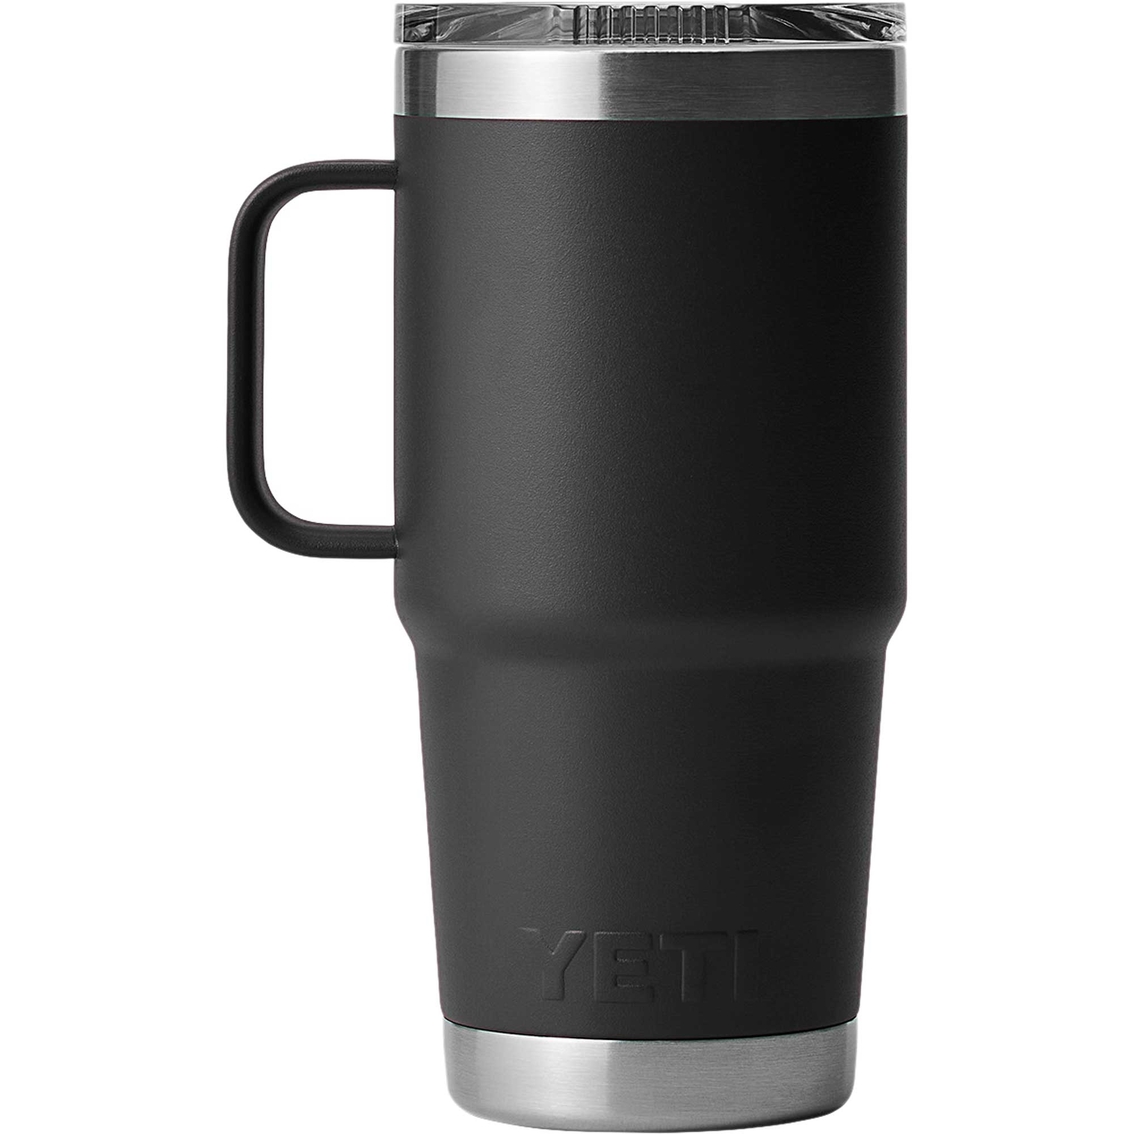 Yeti Rambler 20 oz. Travel Mug with Stronghold Lid - Image 2 of 3